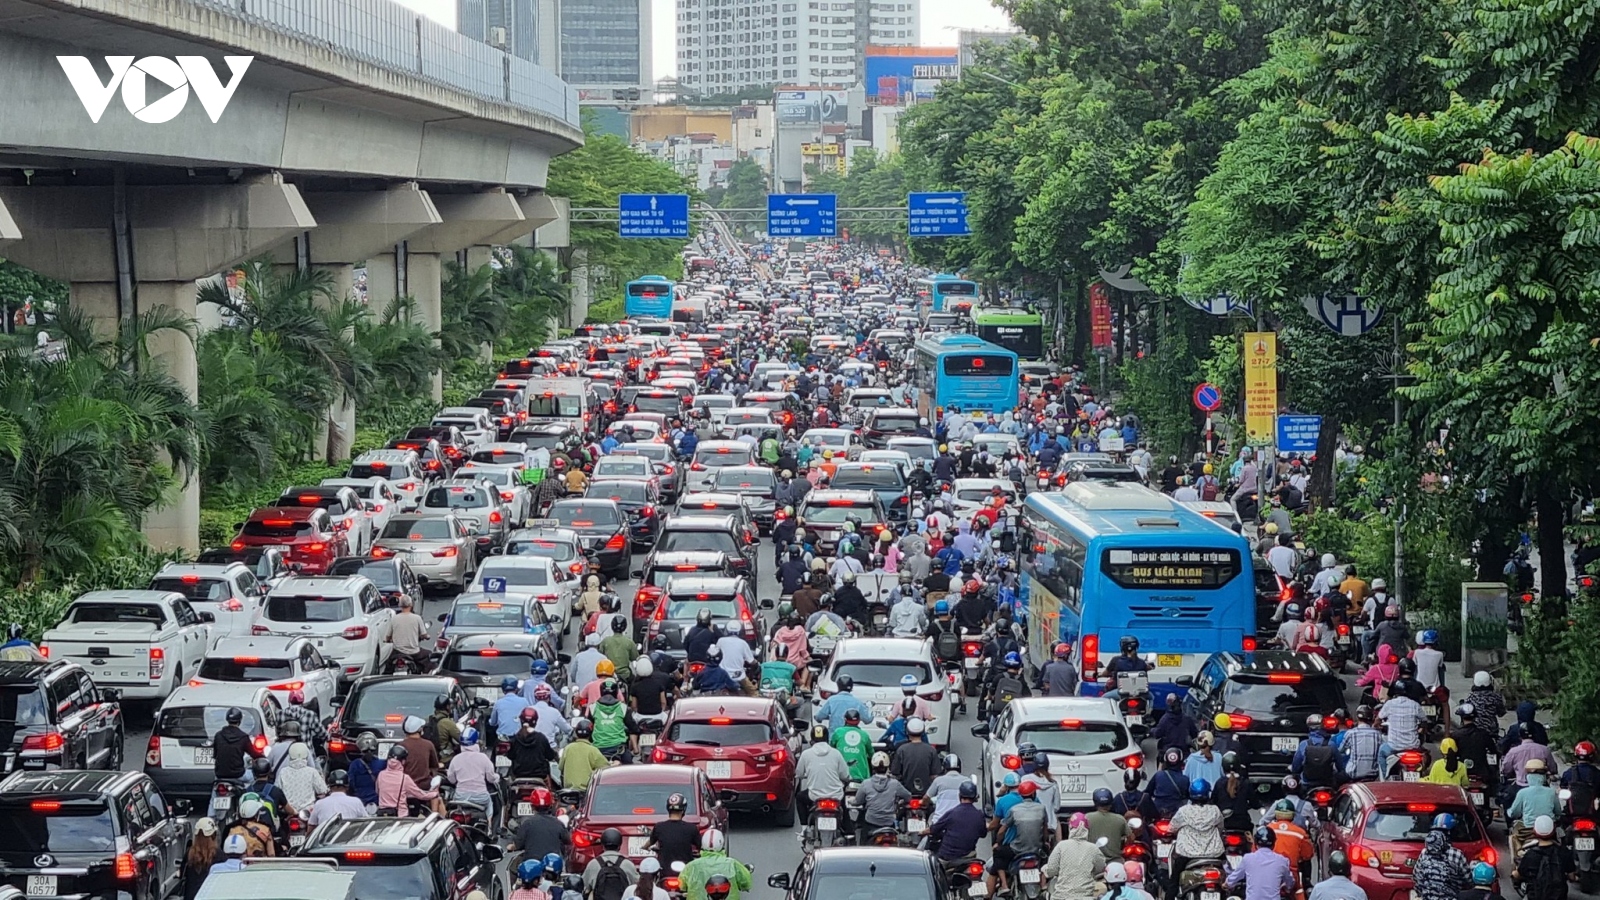 Bao giờ Hà Nội bắt đầu thu phí phương tiện đi vào nội đô?